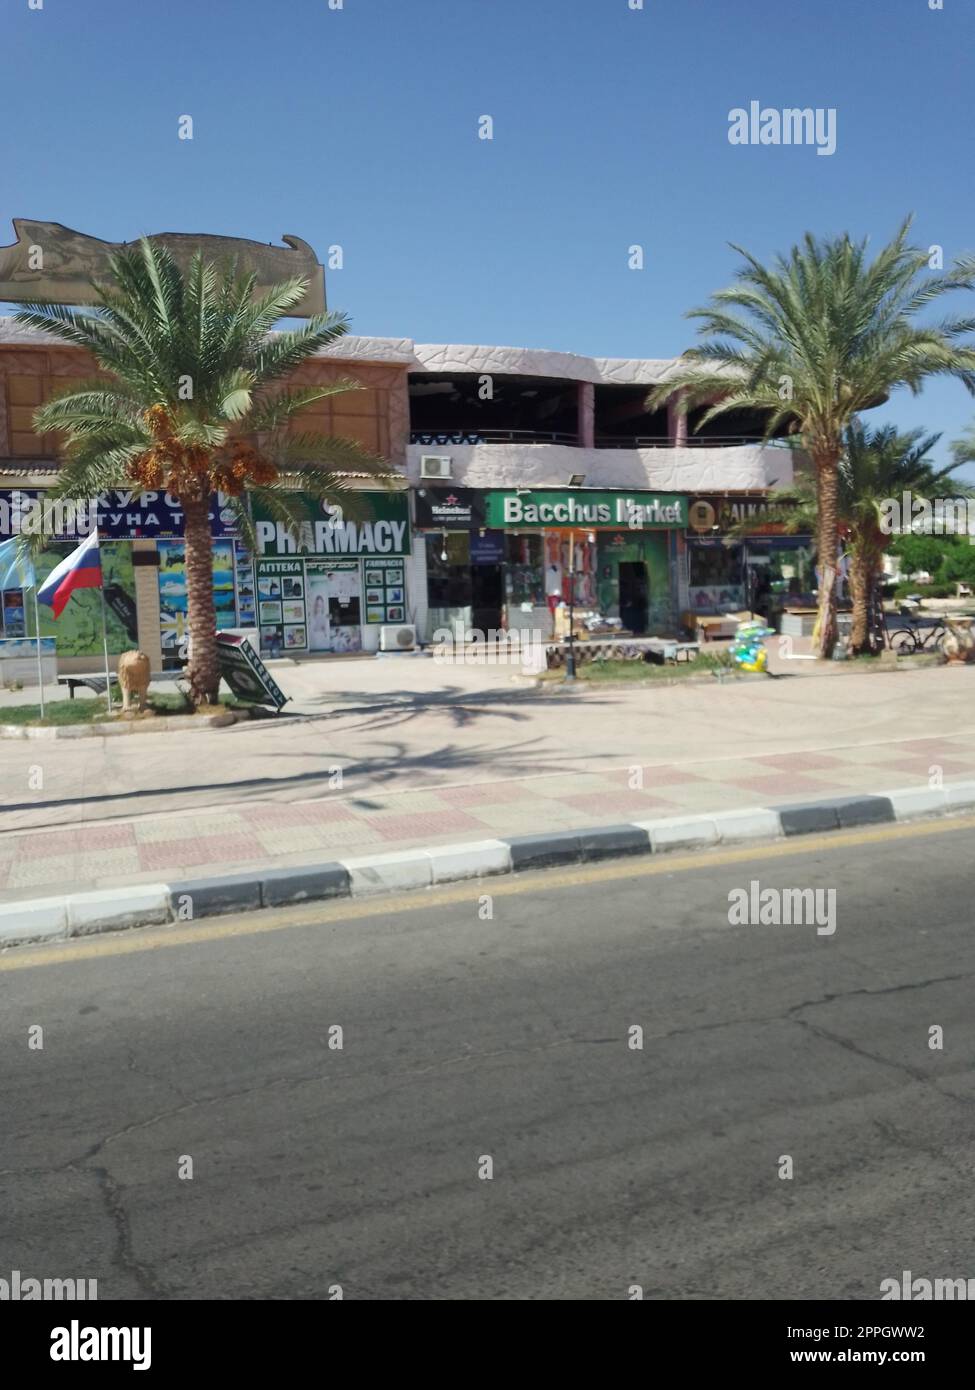 Negozi commerciali mercato di Bacchus e farmacia nella città turistica di Sharm el-Sheikh. Egitto Foto Stock